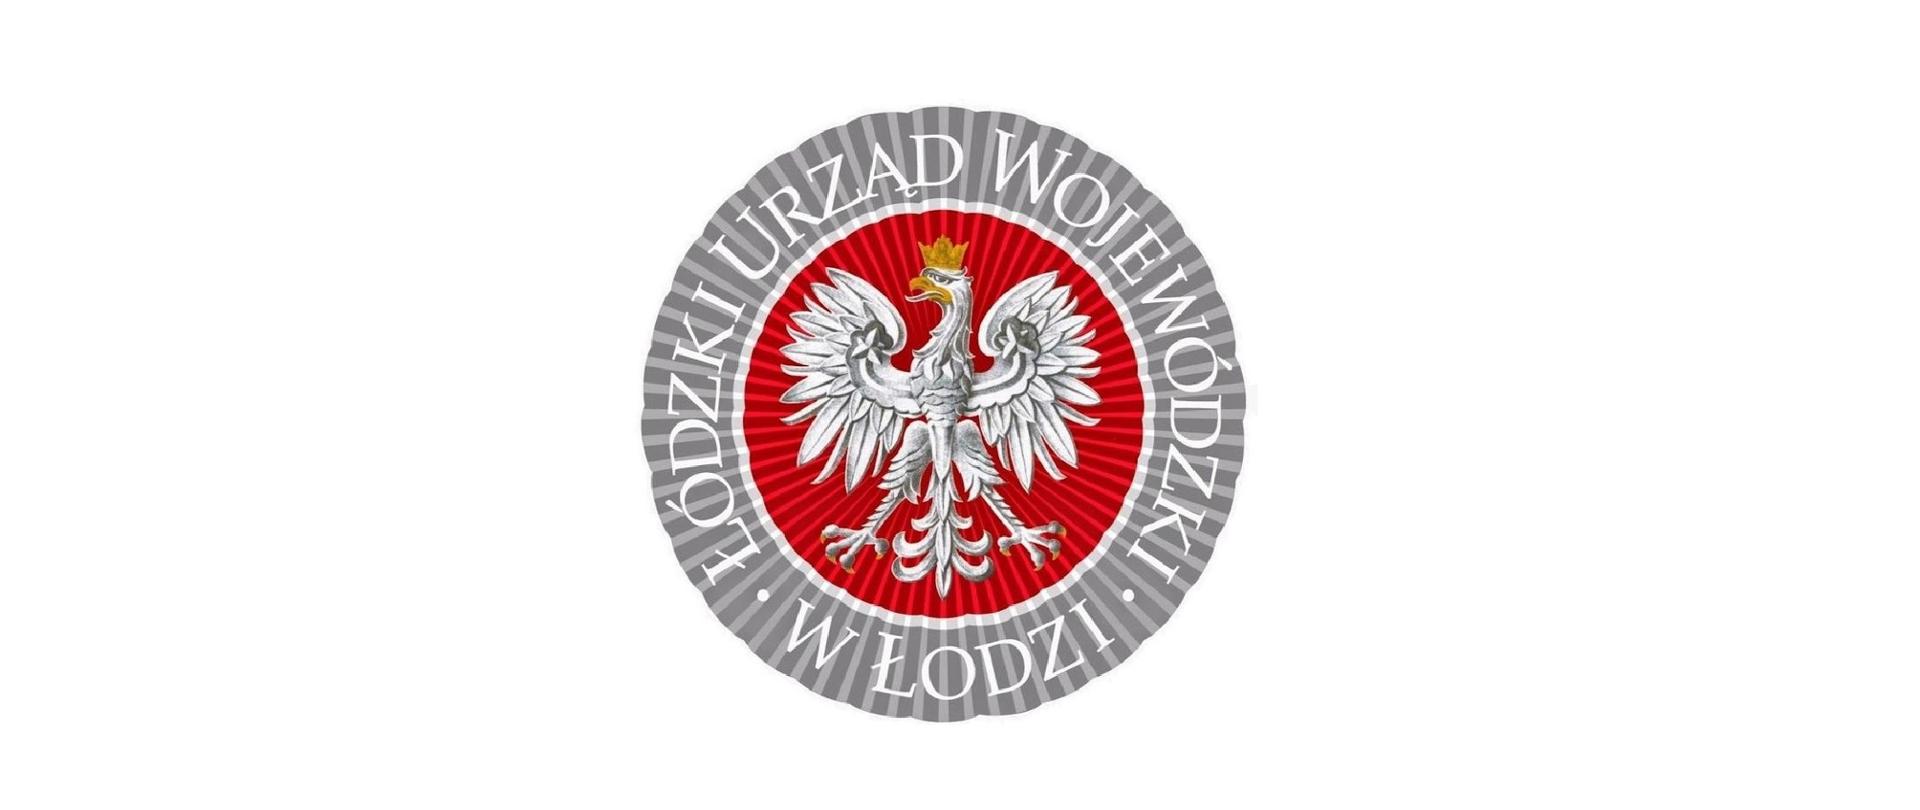 Logo Łódzkiego Urzędu Wojewódzkiego w Łodzi. W środkowej części logo znajduje się orzeł biały w złotej koronie na czerwonym okrągłym tle. Dookoła znajduje się napis na szarym tle Łódzki Urząd Wojewódzki w Łodzi. Litery są w białym kolorze.